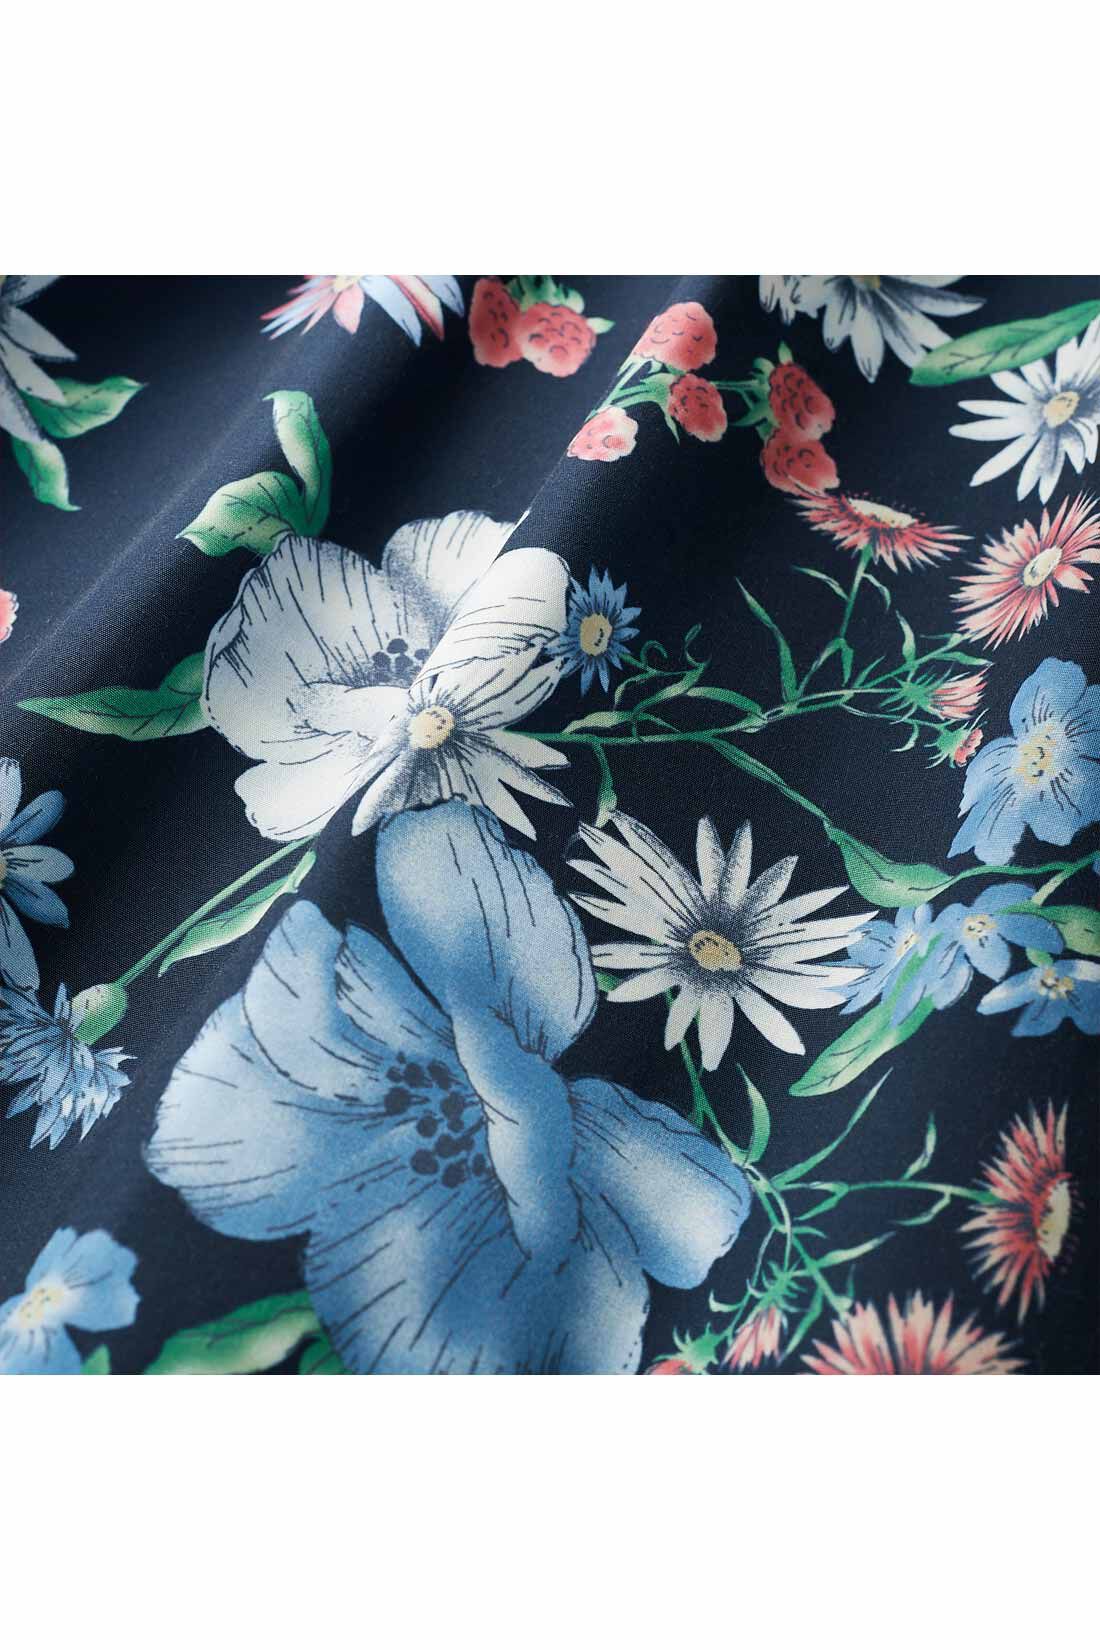 イディット|IEDIT[イディット] 華やか柄でコーディネイトが着映えする花柄フレアースカート〈ネイビー〉|ほどよいハリ感のある高密度なきれいめ素材。